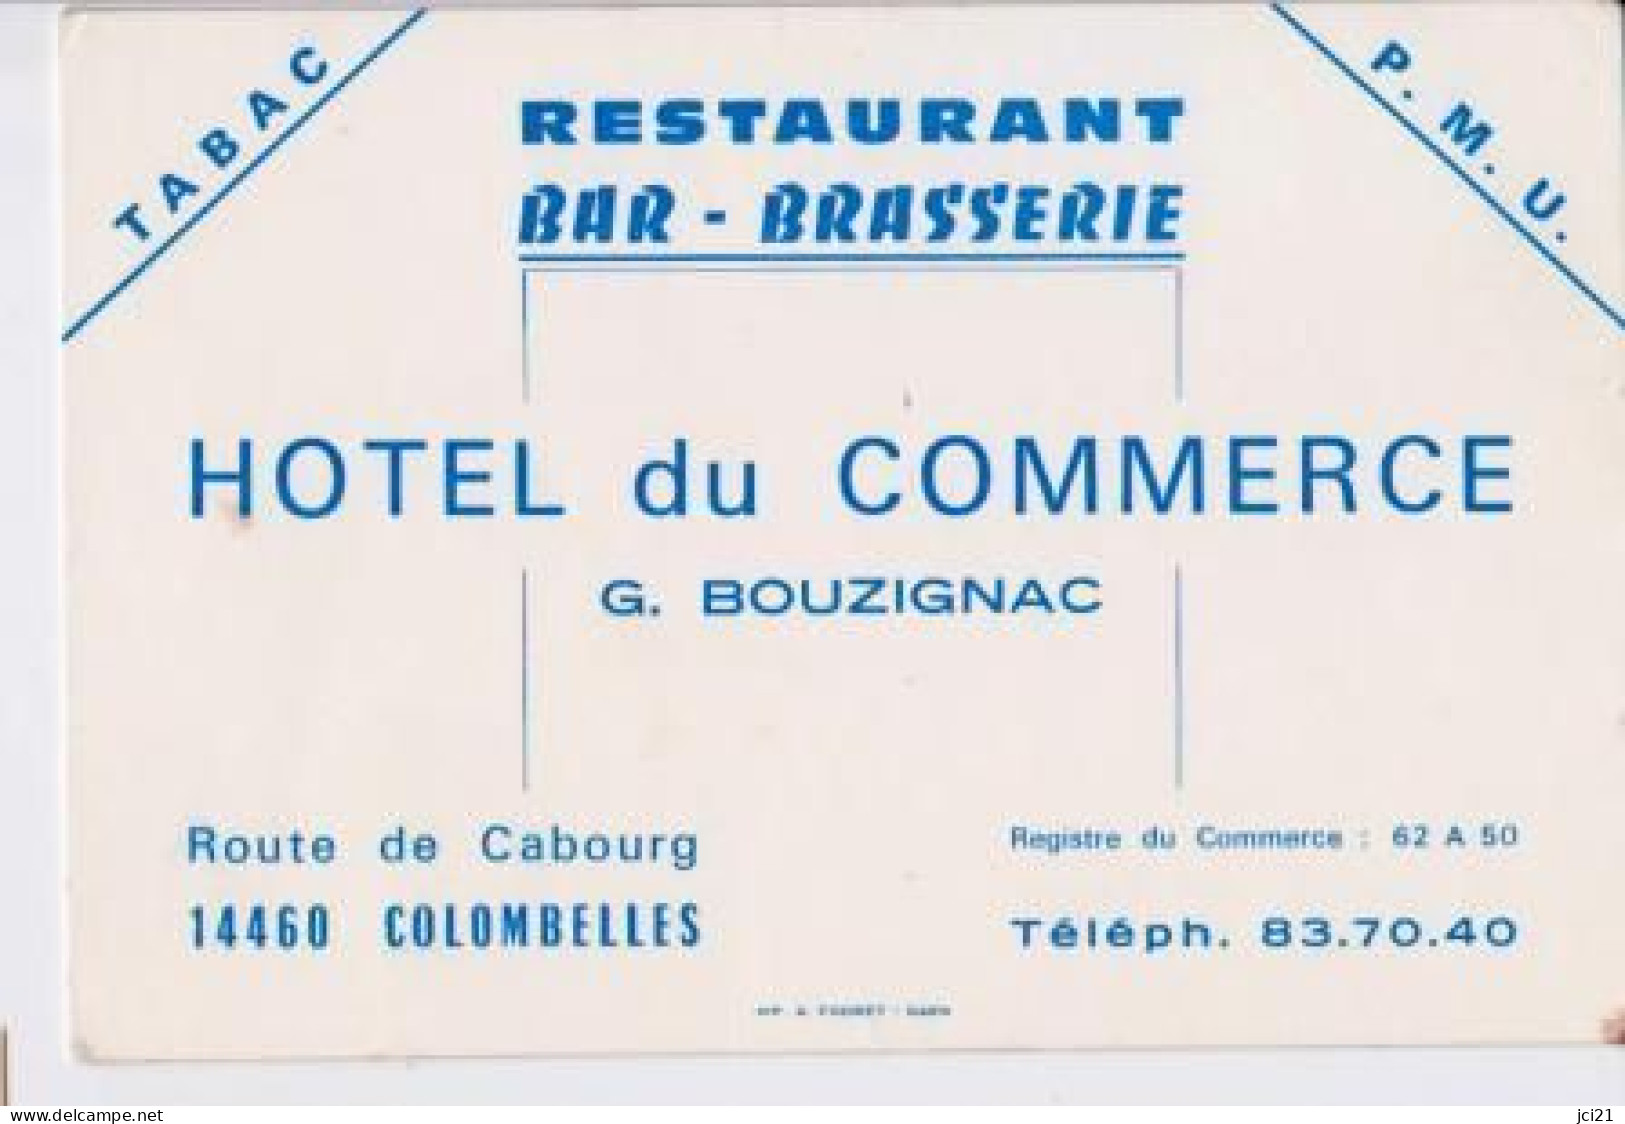 Restaurant Bar Brasserie Hôtel Du Commerce G.BOUZIGNAC 14460 COLOMBELLES _CV99 - Cartes De Visite